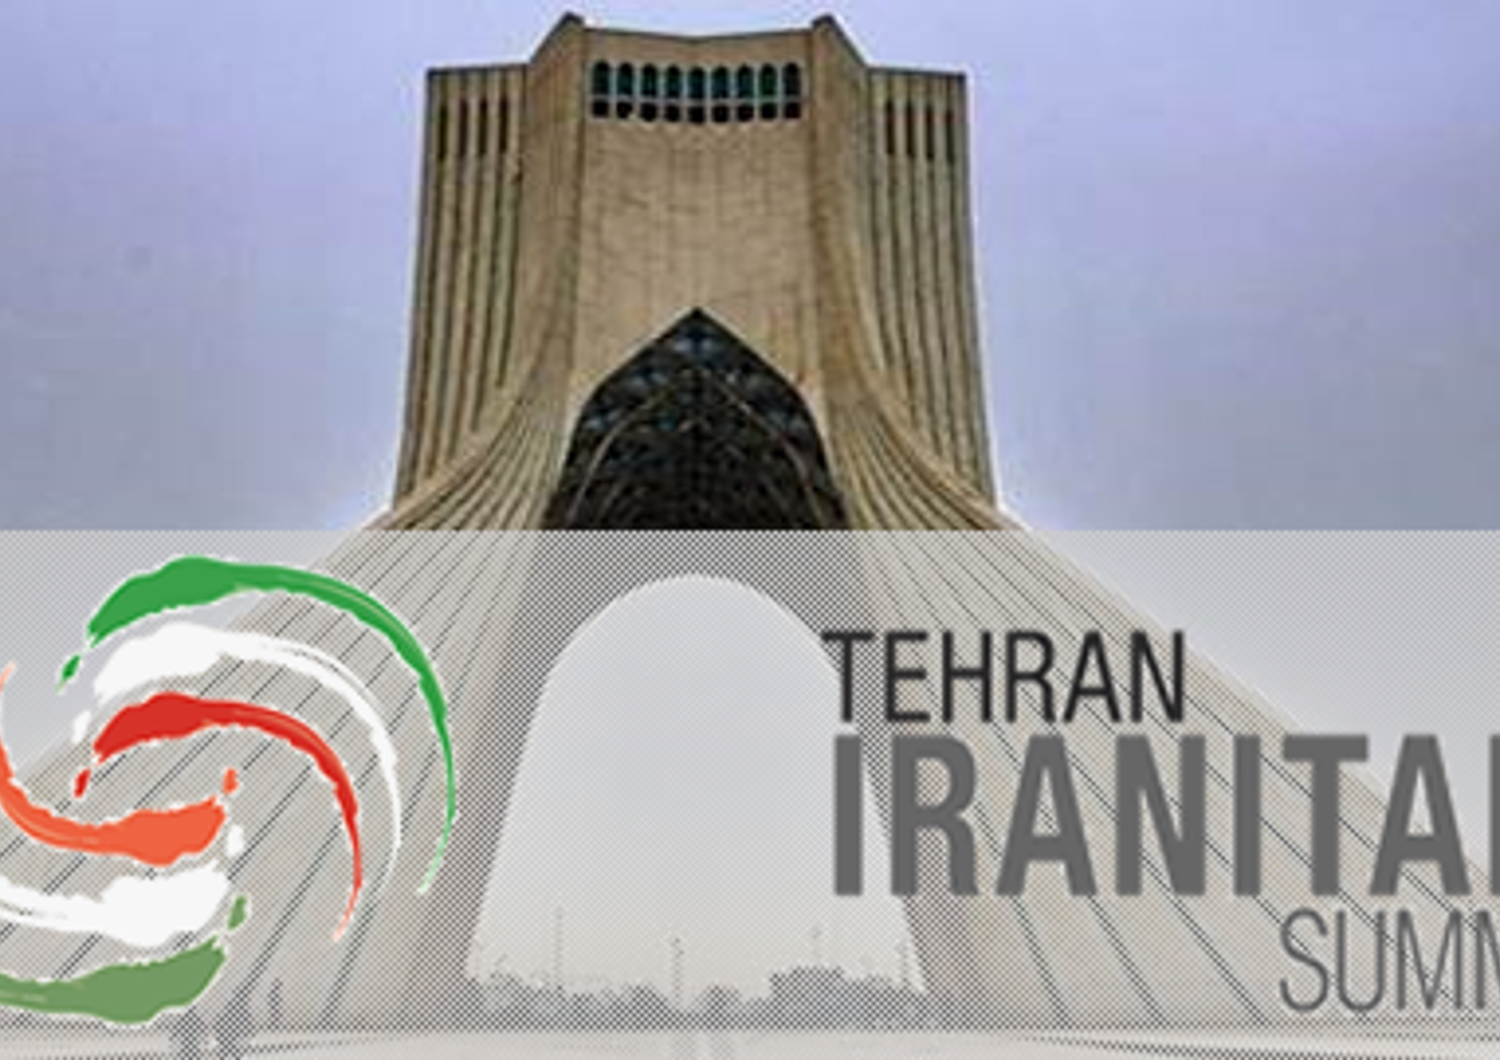 tehran iranitaly summit&nbsp;